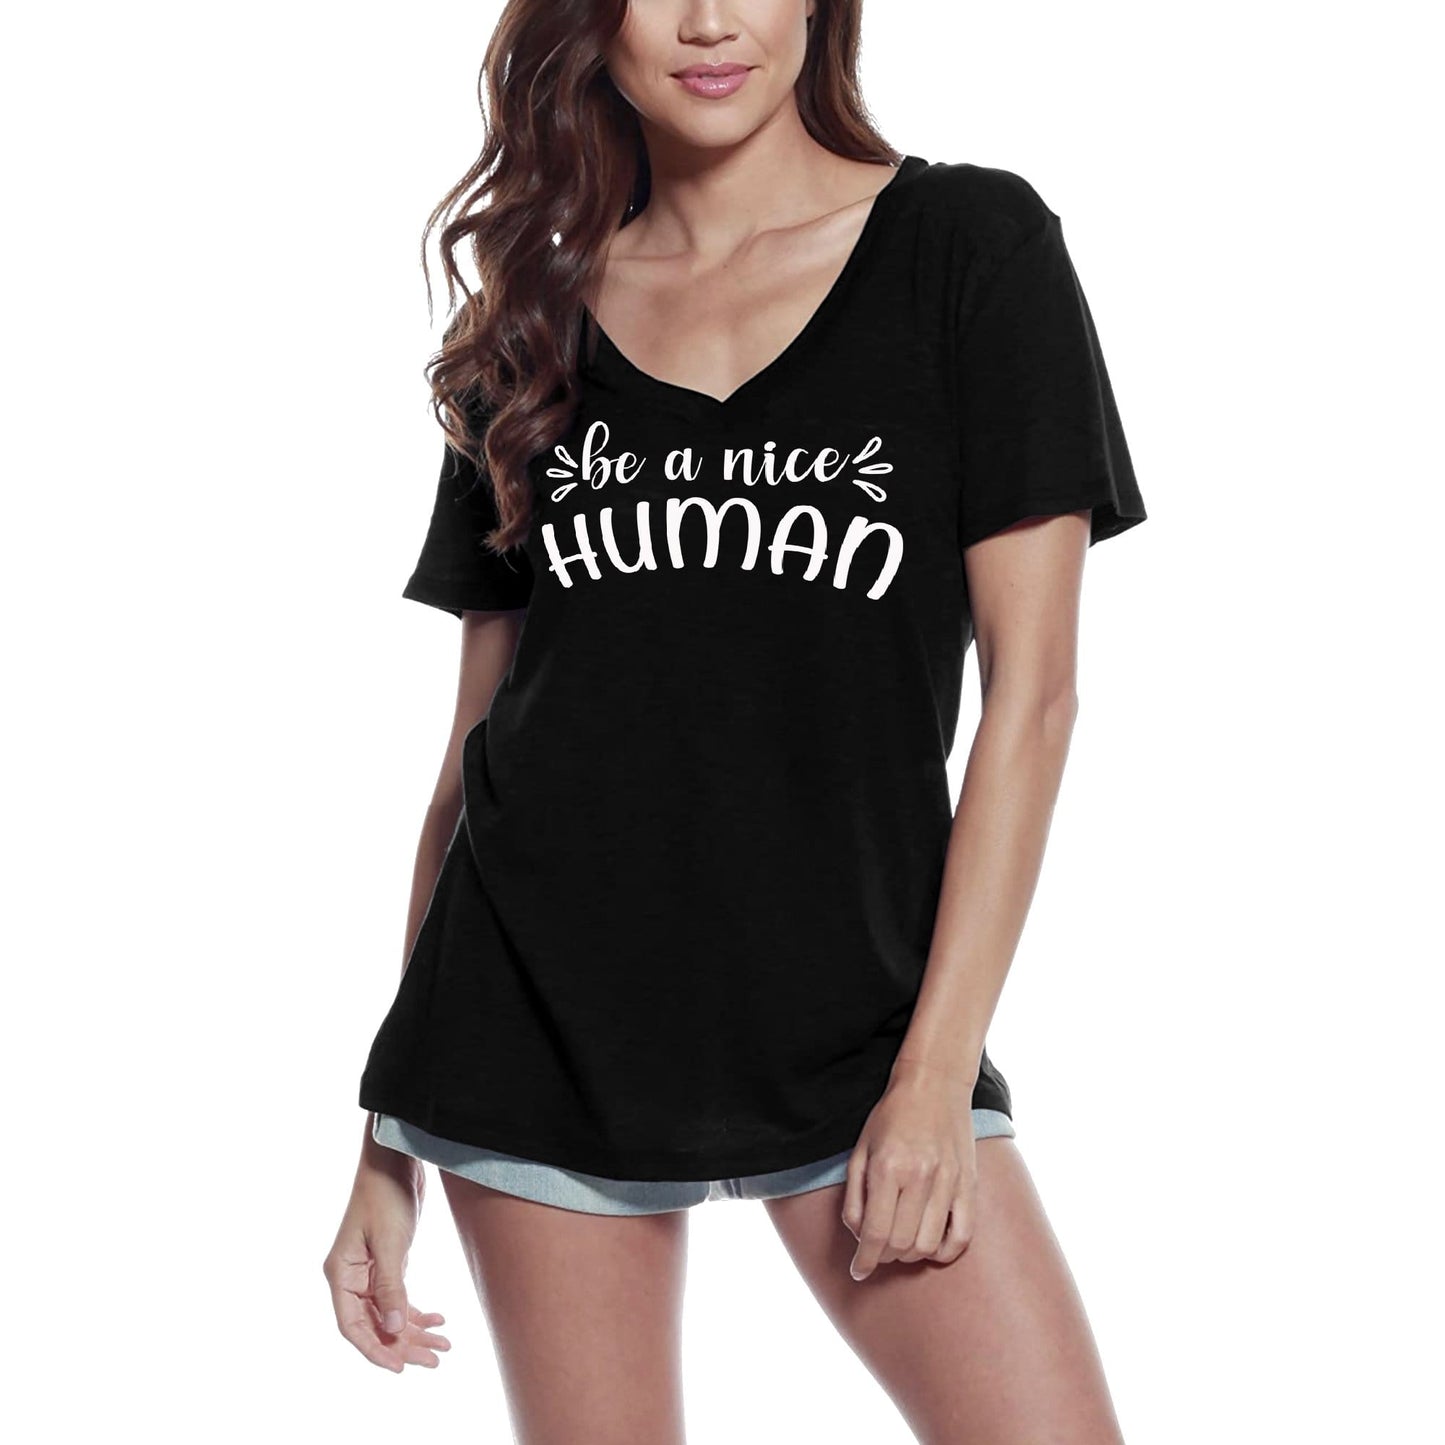 ULTRABASIC Women's T-Shirt Be a Nice Human - Short Sleeve Tee Shirt Tops